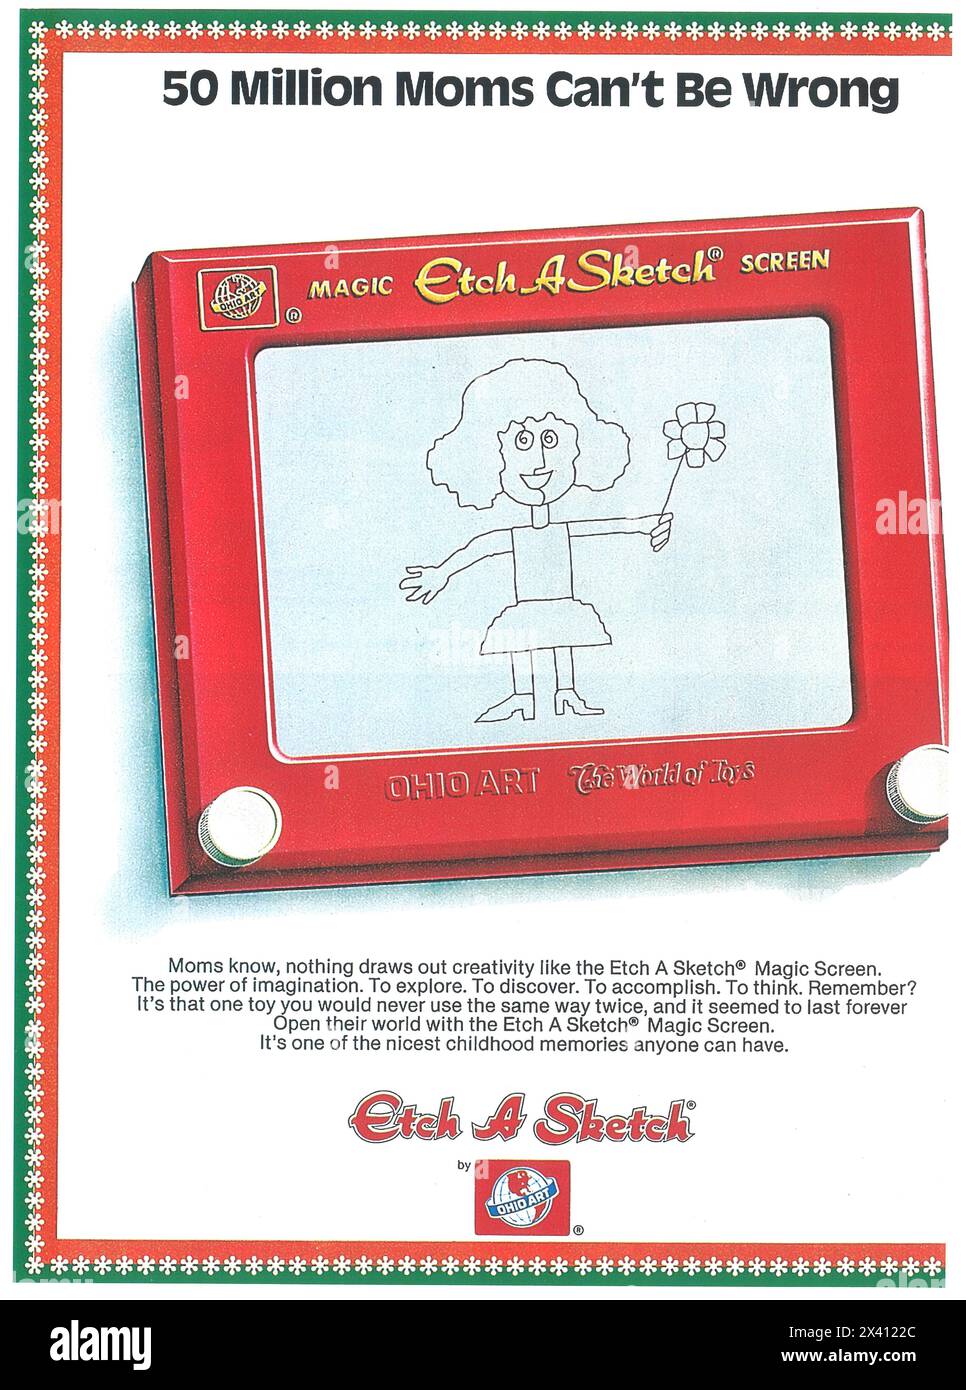 1985 Etch-A-Sketch Magic Screen Ad Stock Photo